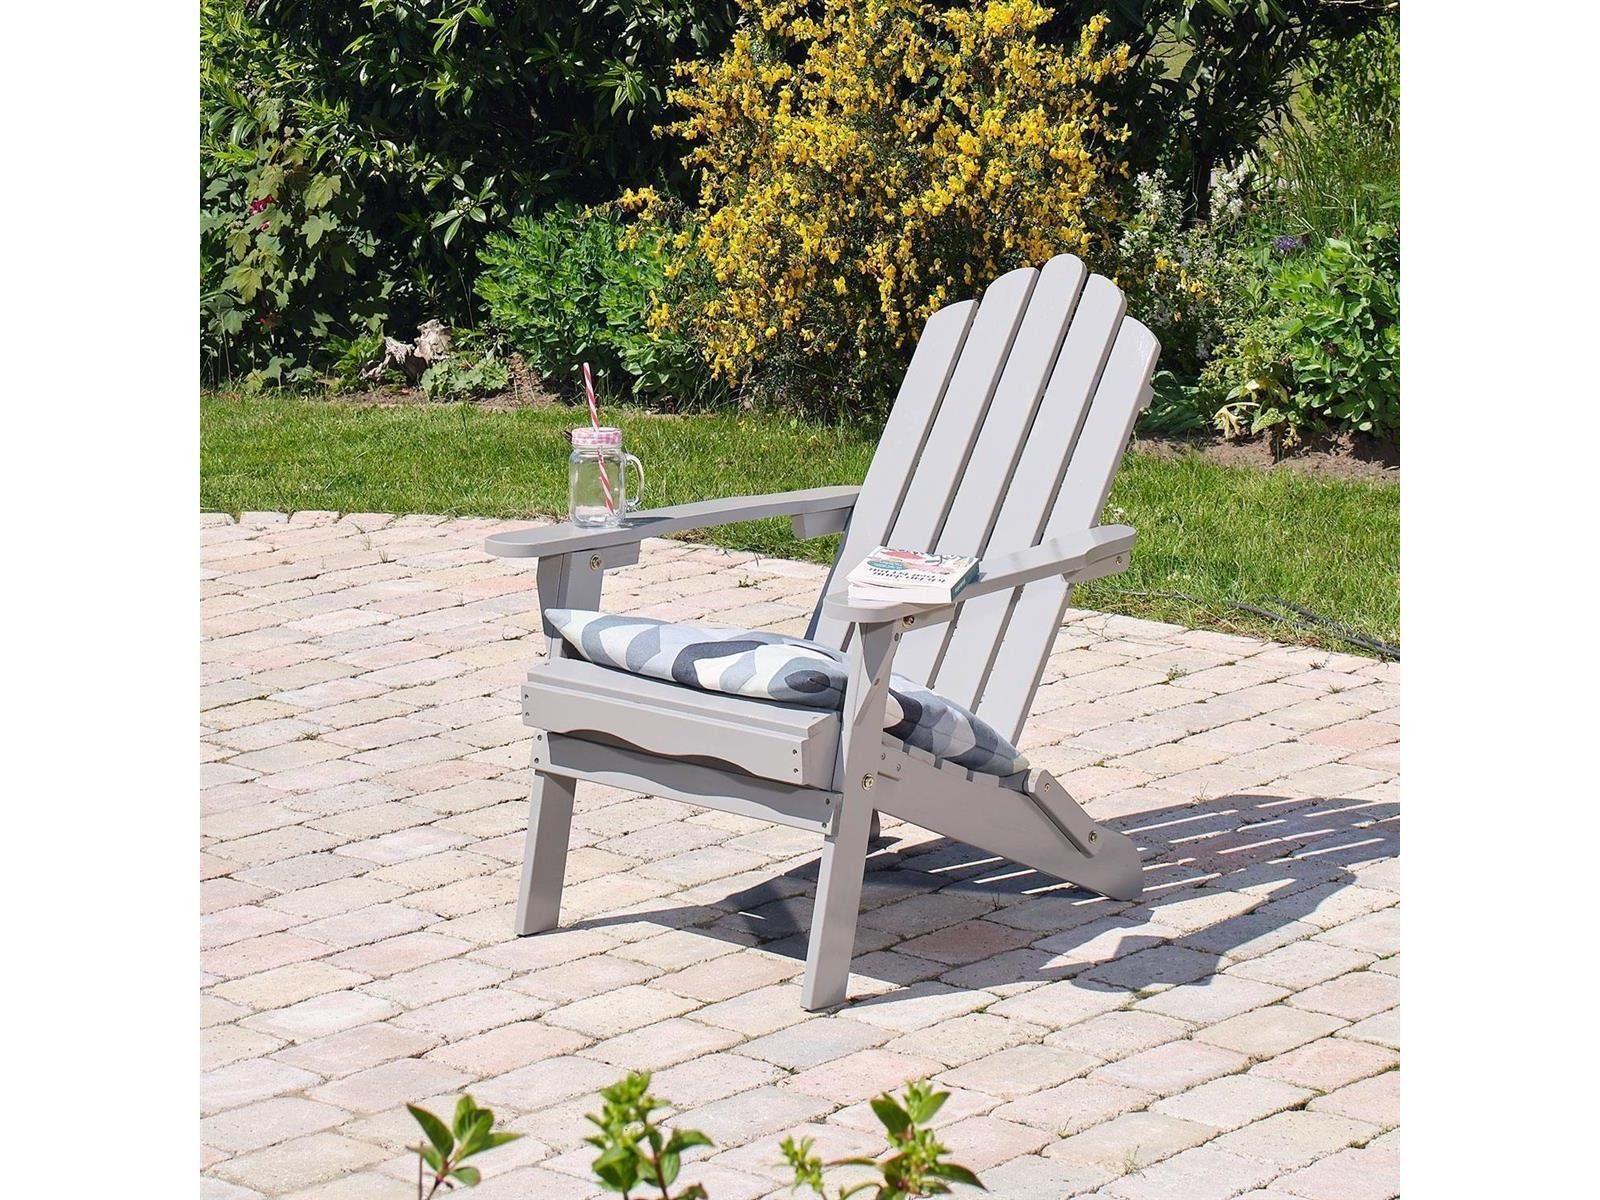 Green Spirit Gartenlounge-Sessel Gartensessel Adirondack Chair Ben in lichtgrau (Set), klappbar, Maße: 73x87x91cm